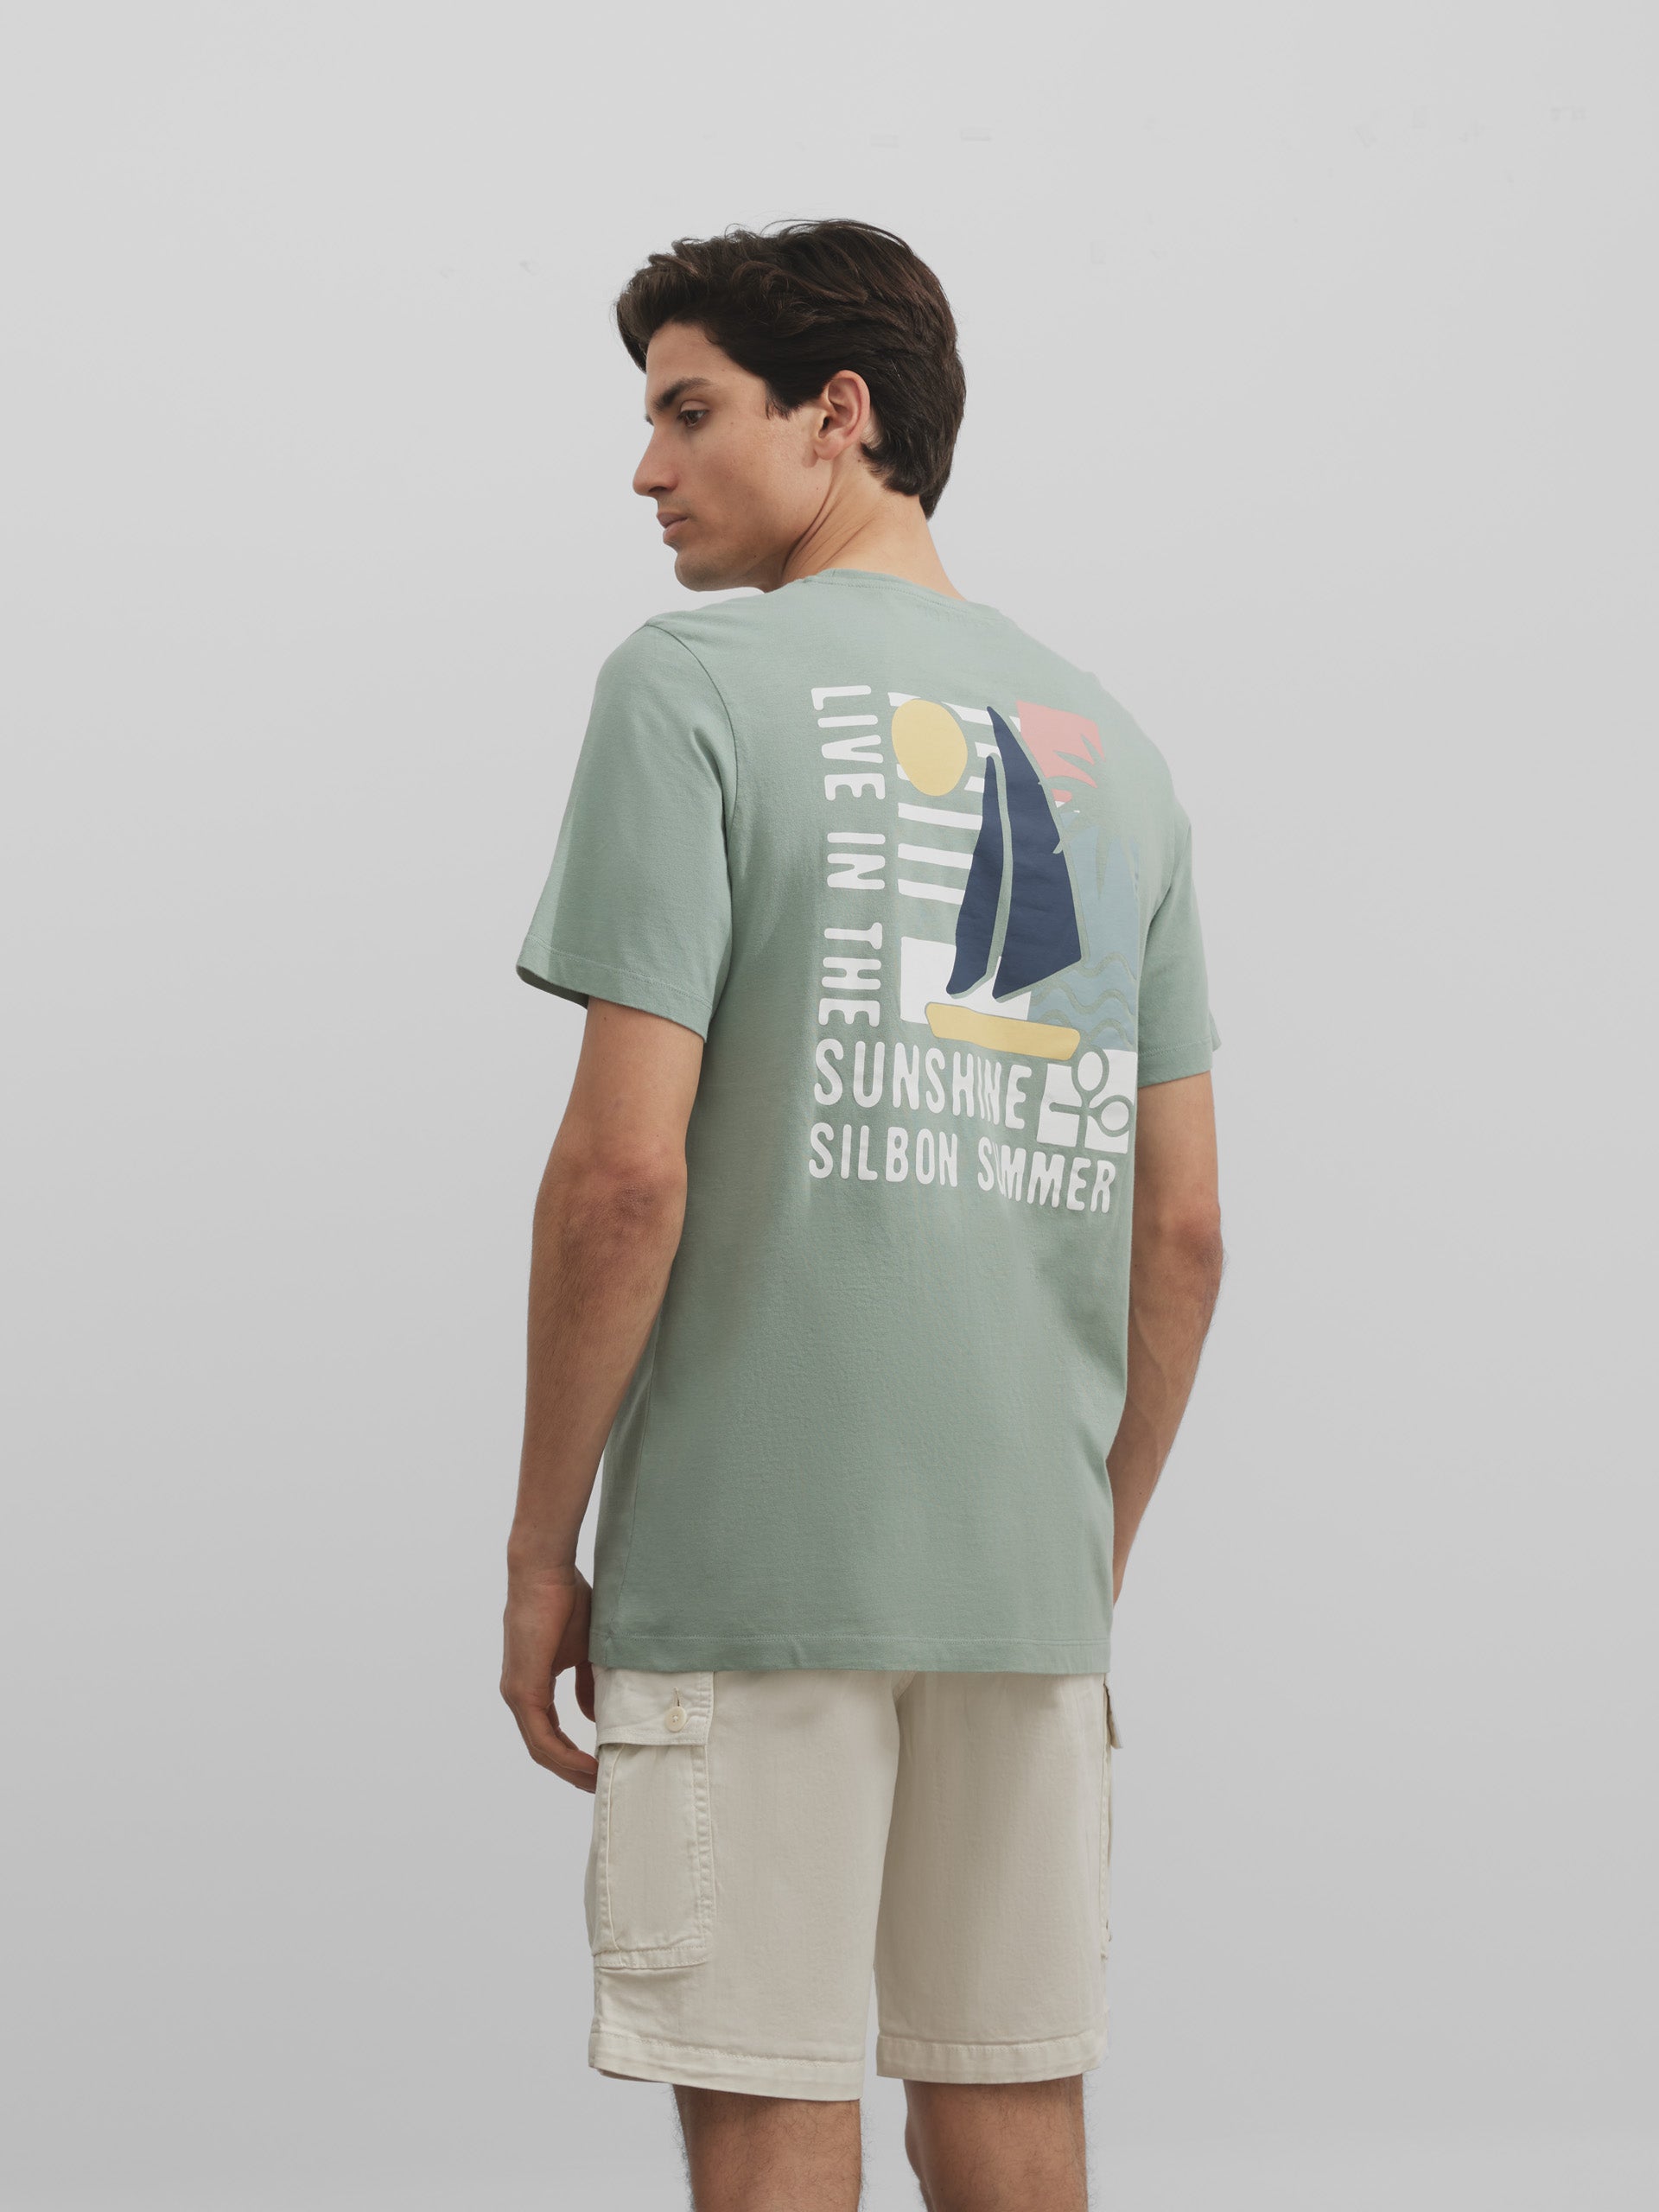 Silbon sunshine green t-shirt